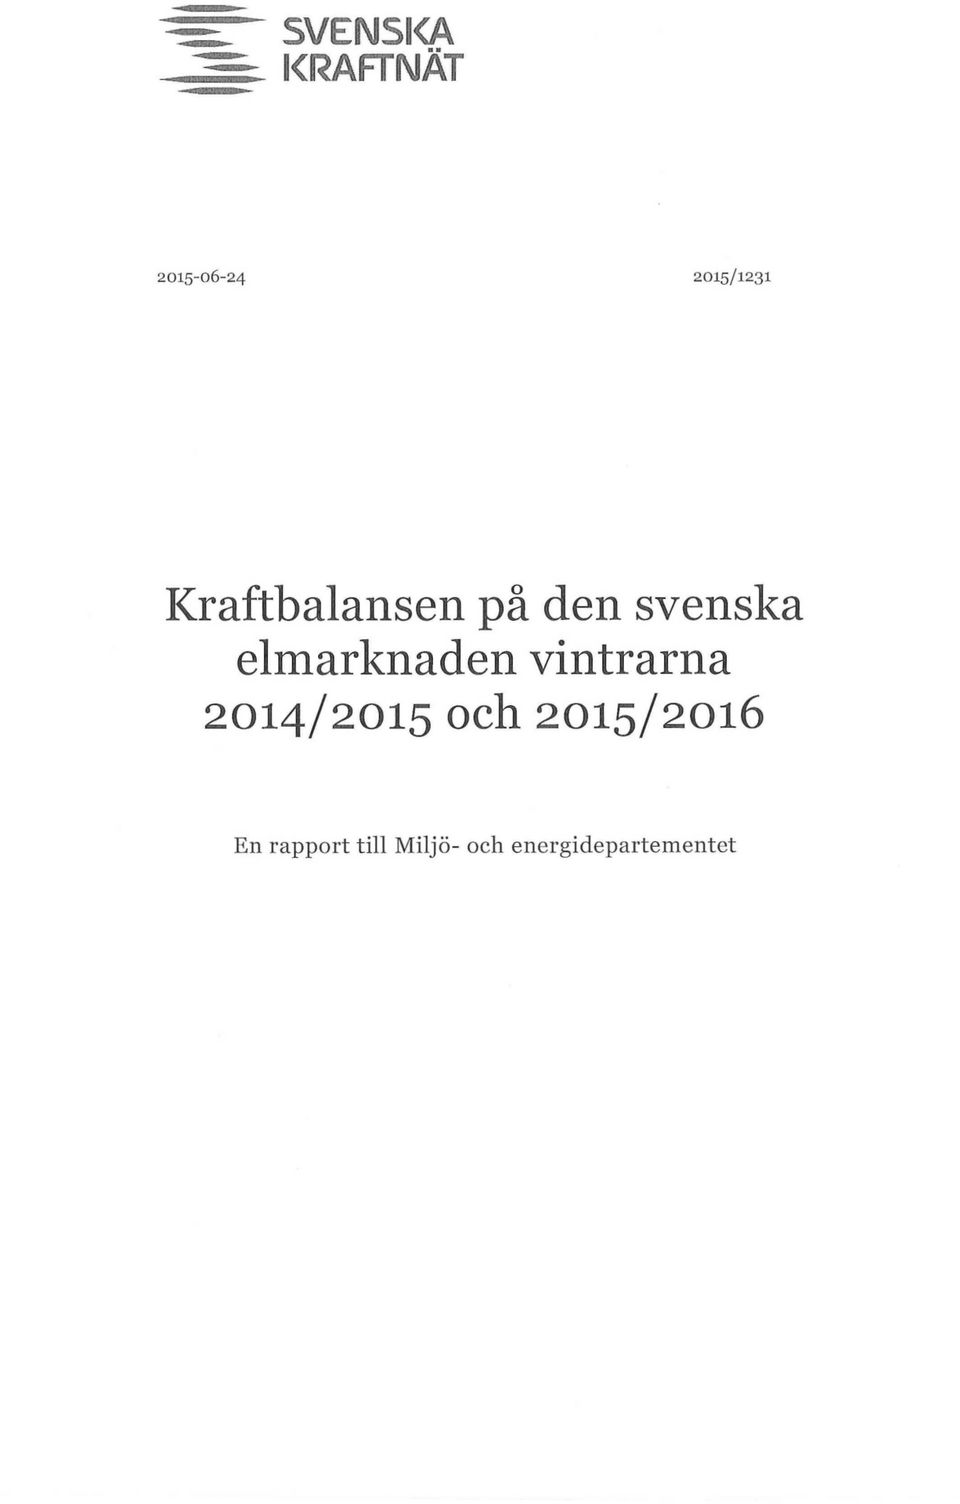 elmarknaden vintrarna 2014/2015 och